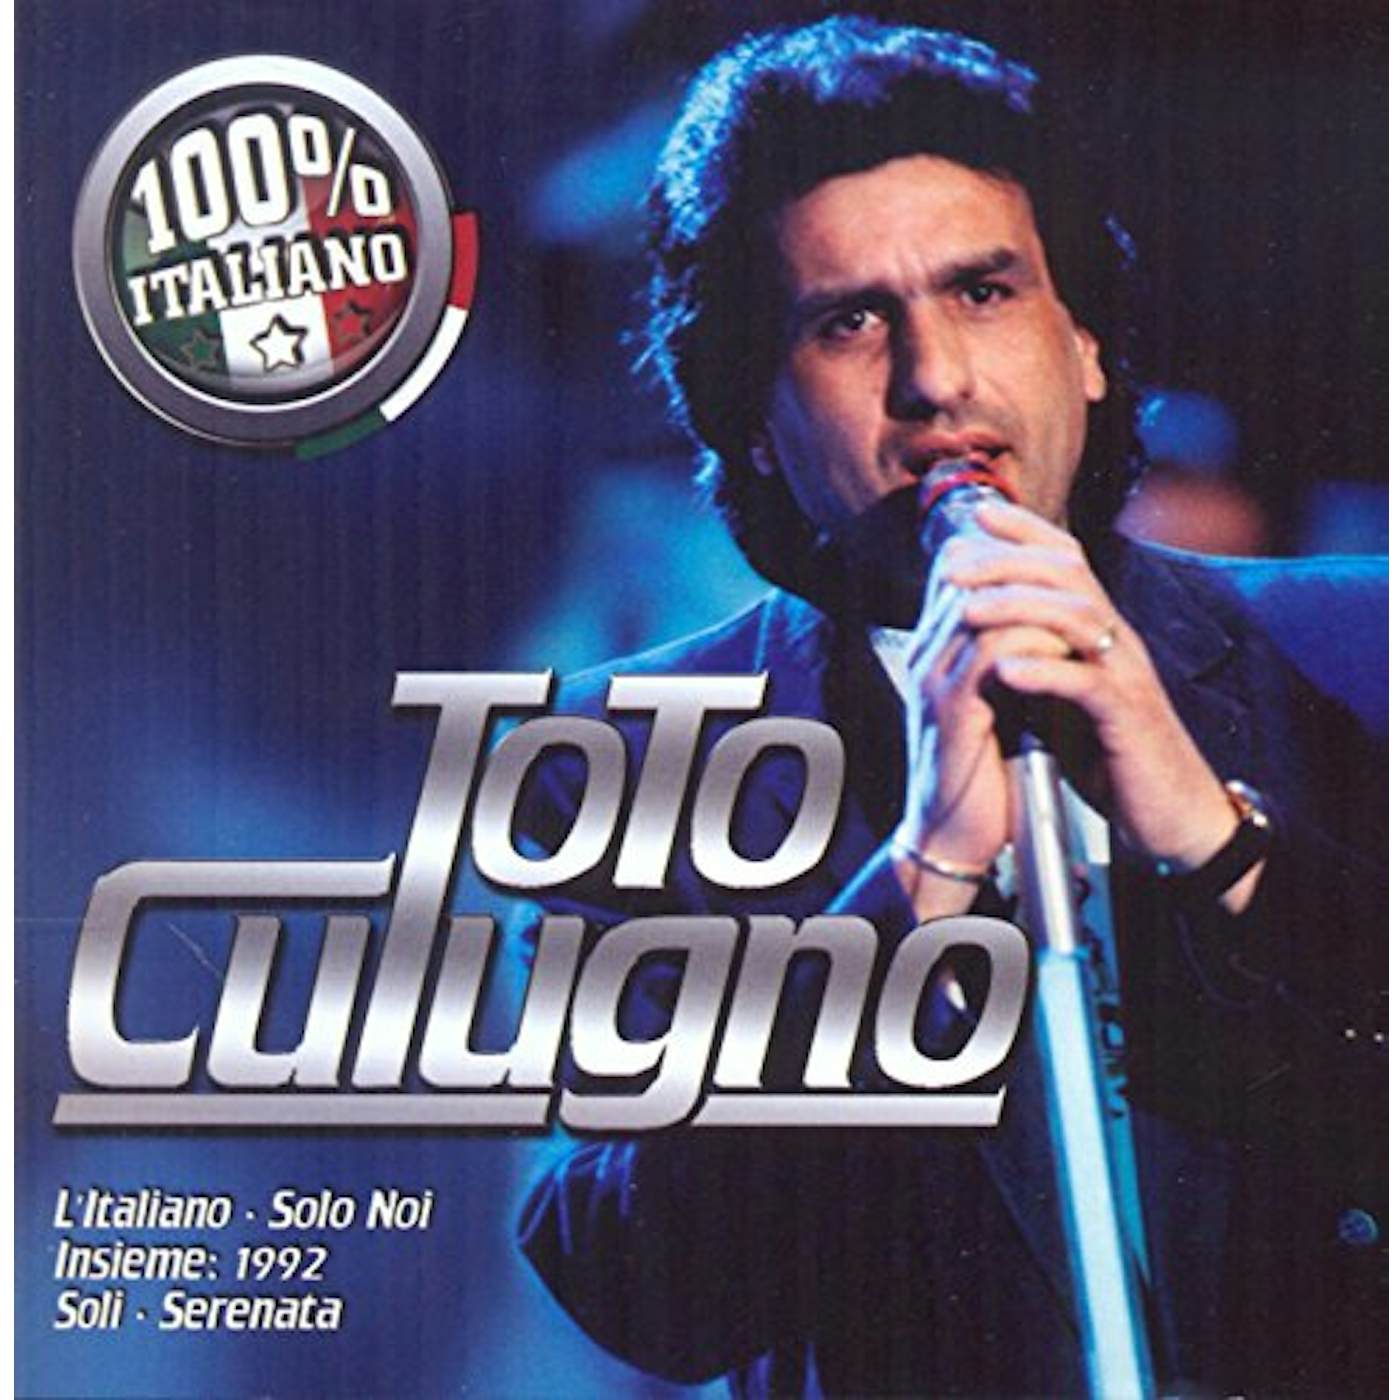 Toto Cutugno 100% ITALIANO CD